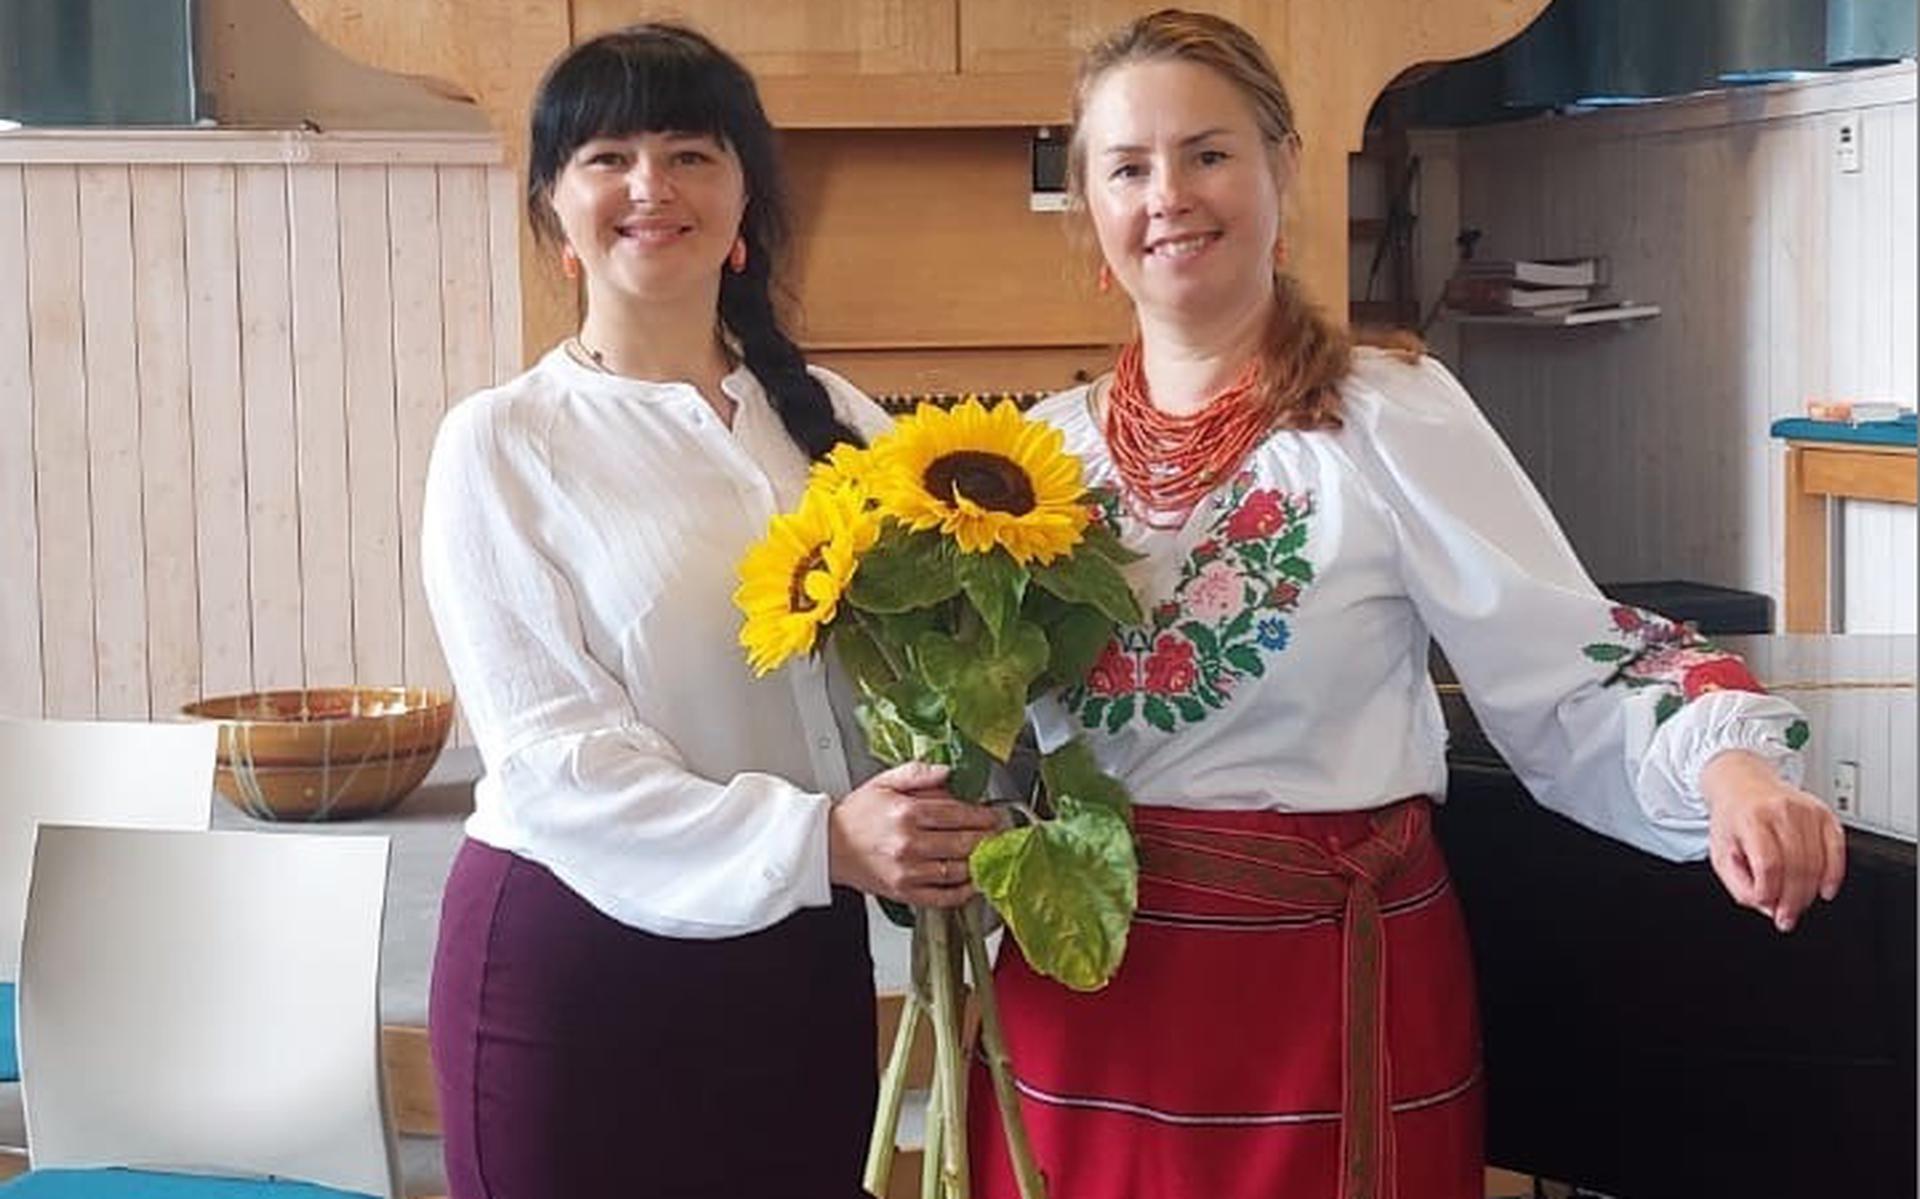 De Oekraïense zussen Natalia Gryshchenko en Victoria Tsymbalyuk uit Donkerbroek. FOTO Victoria Dryn